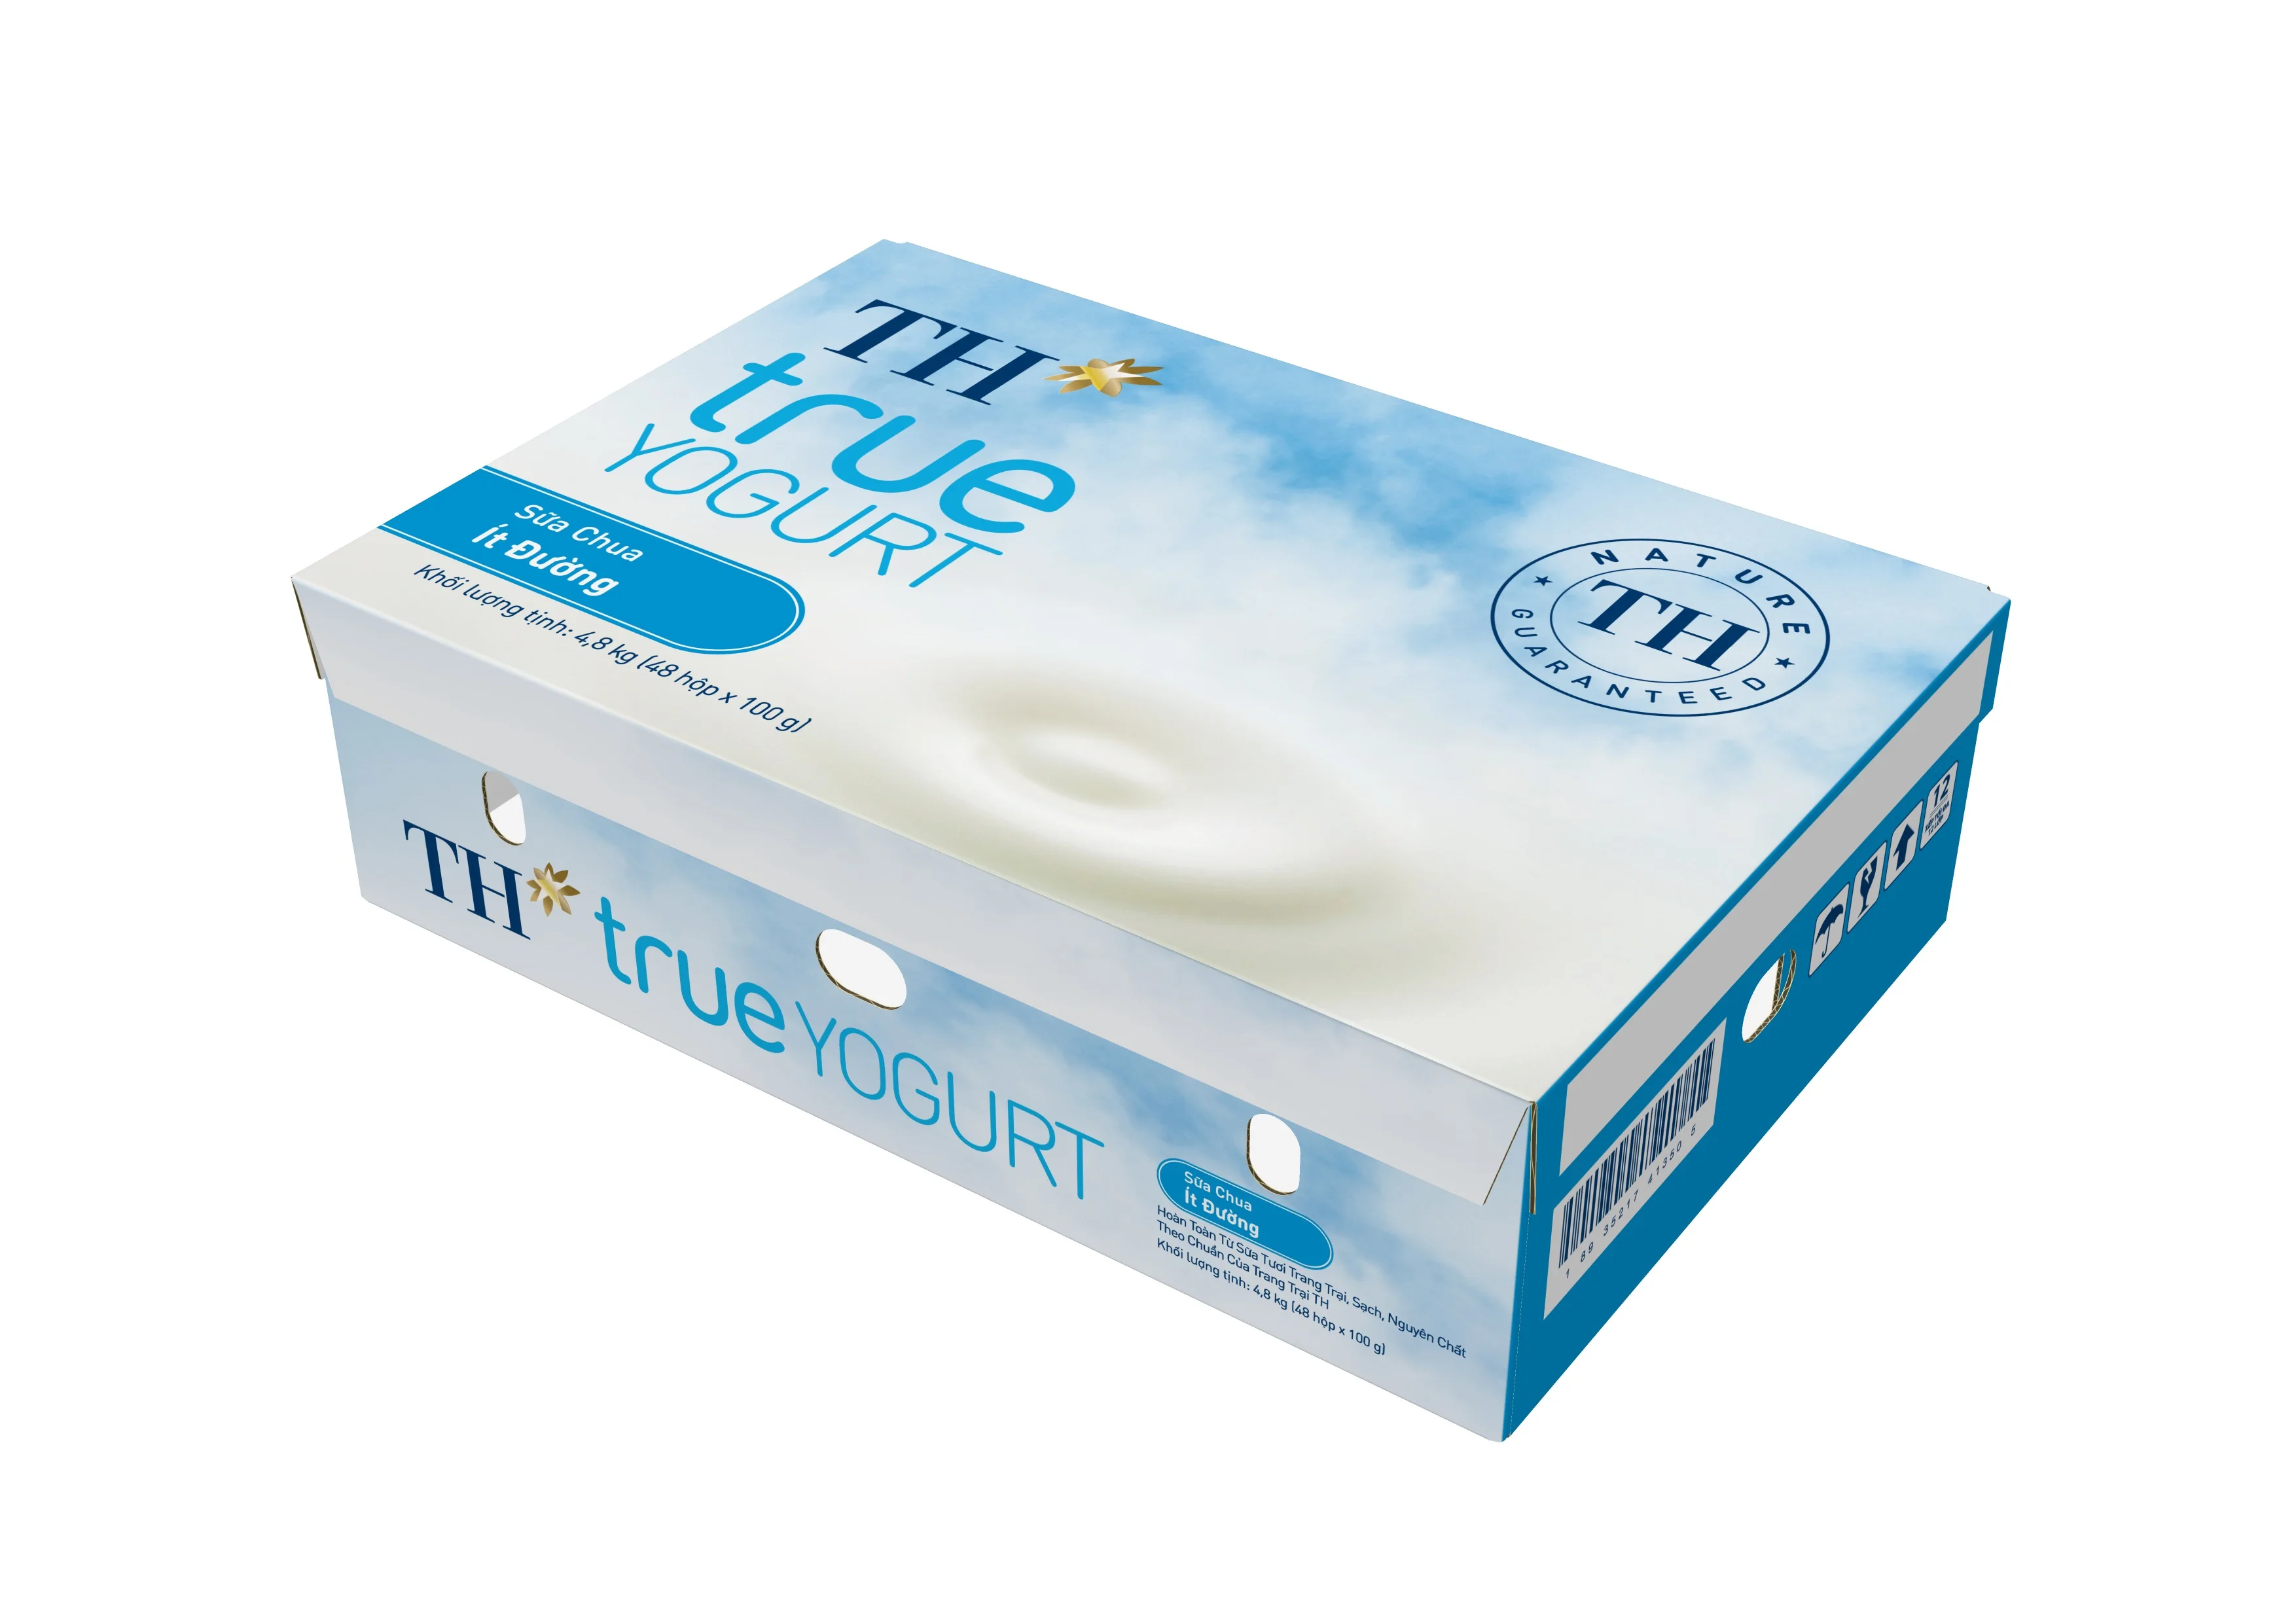 TH true YOGURT - Less Sugar Yogurt 100gx48C Nutrition 45 Days Shelf Life Delicious Dairy Products Yogurt